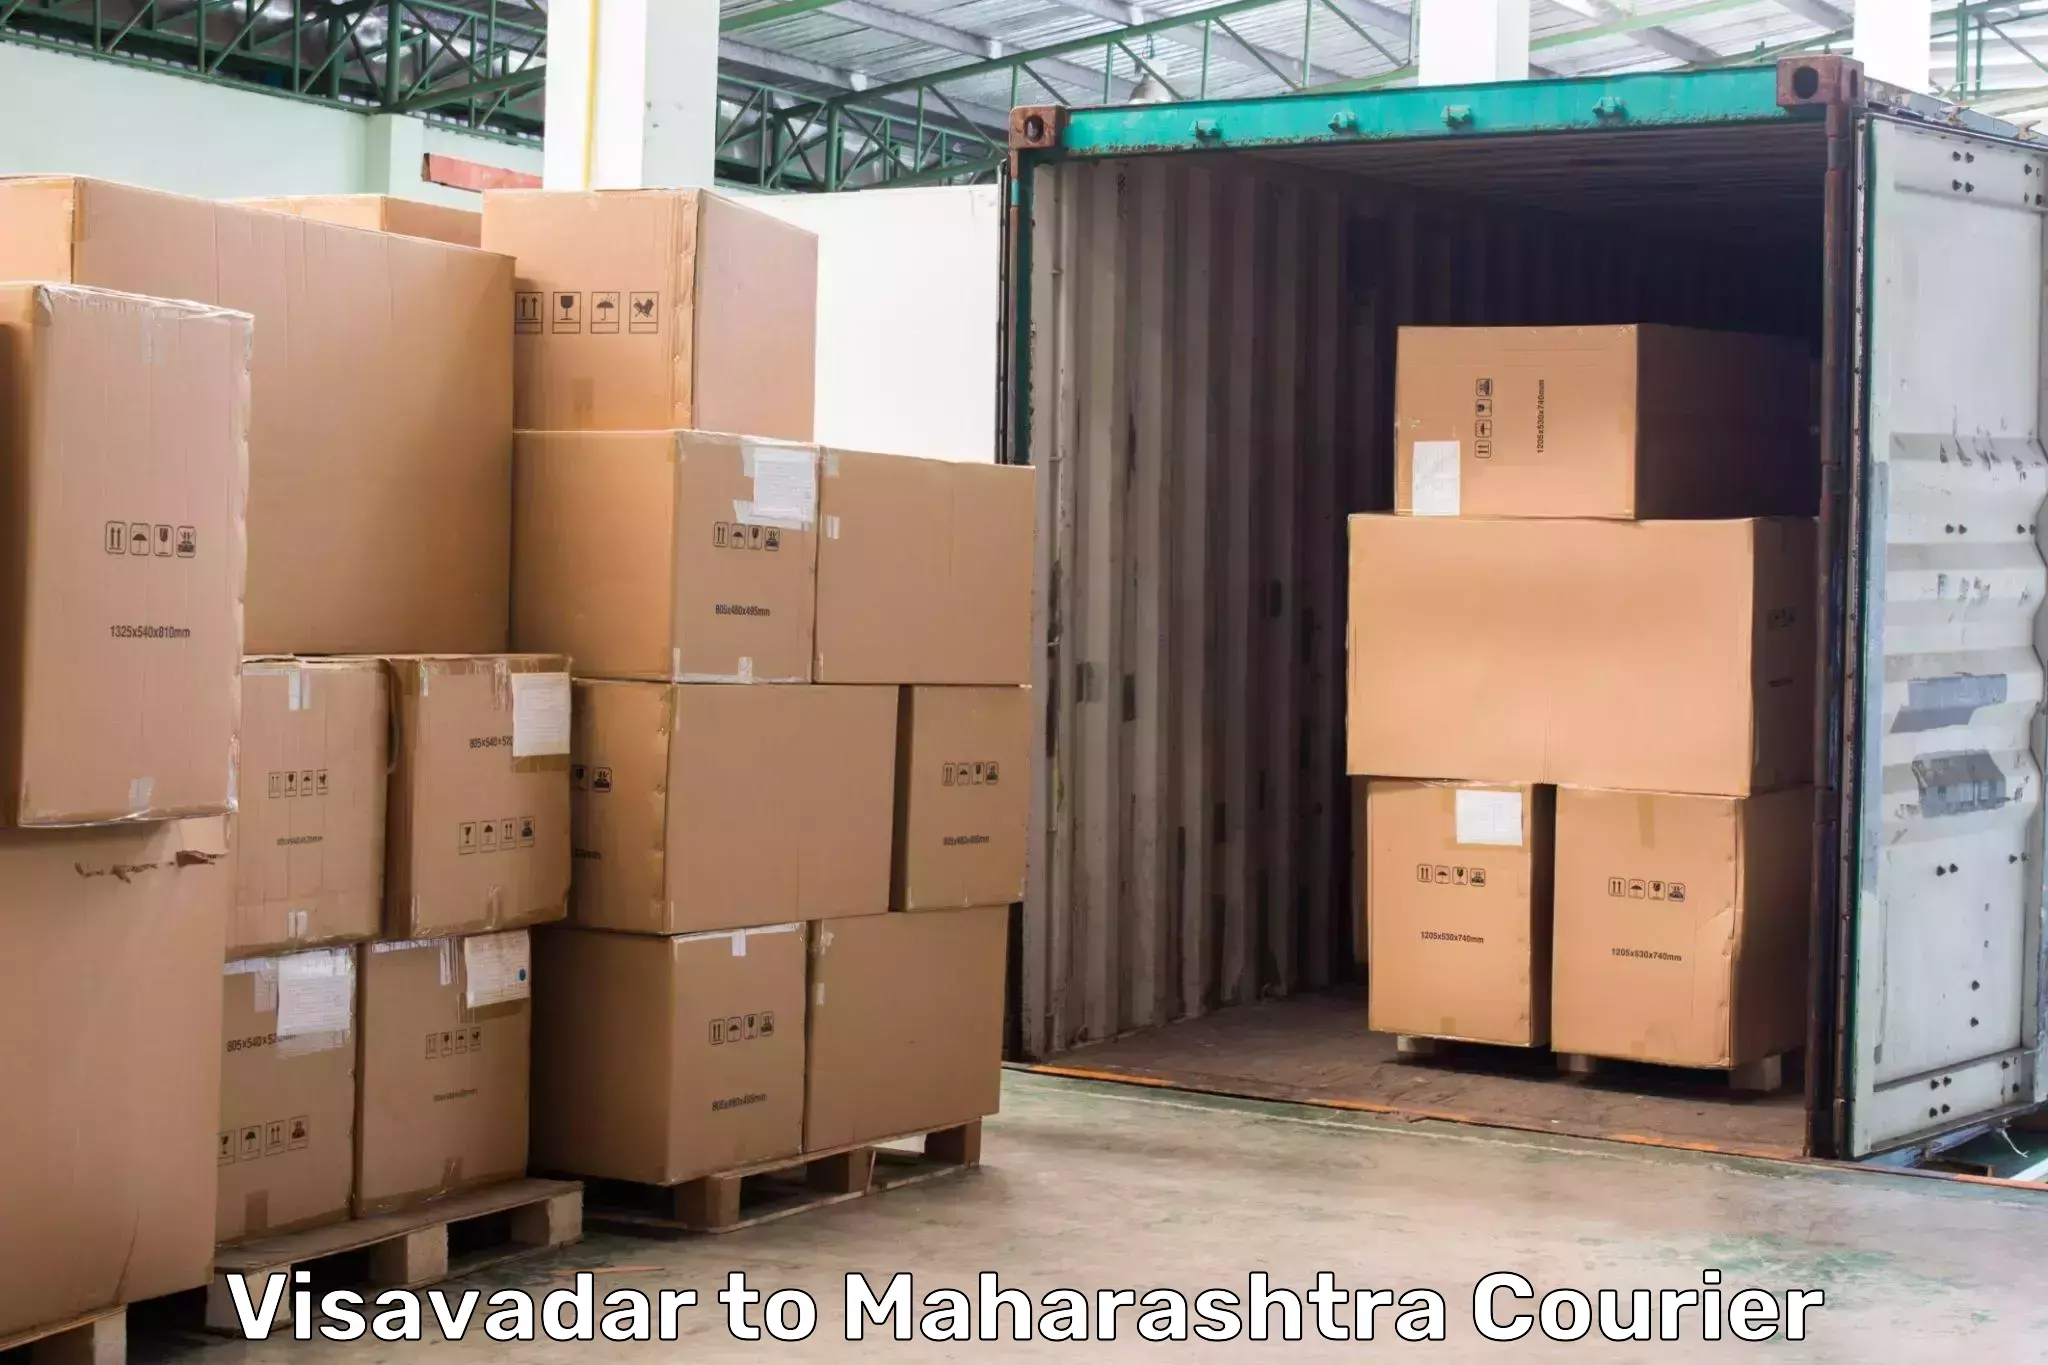 Pharmaceutical courier Visavadar to Nandurbar